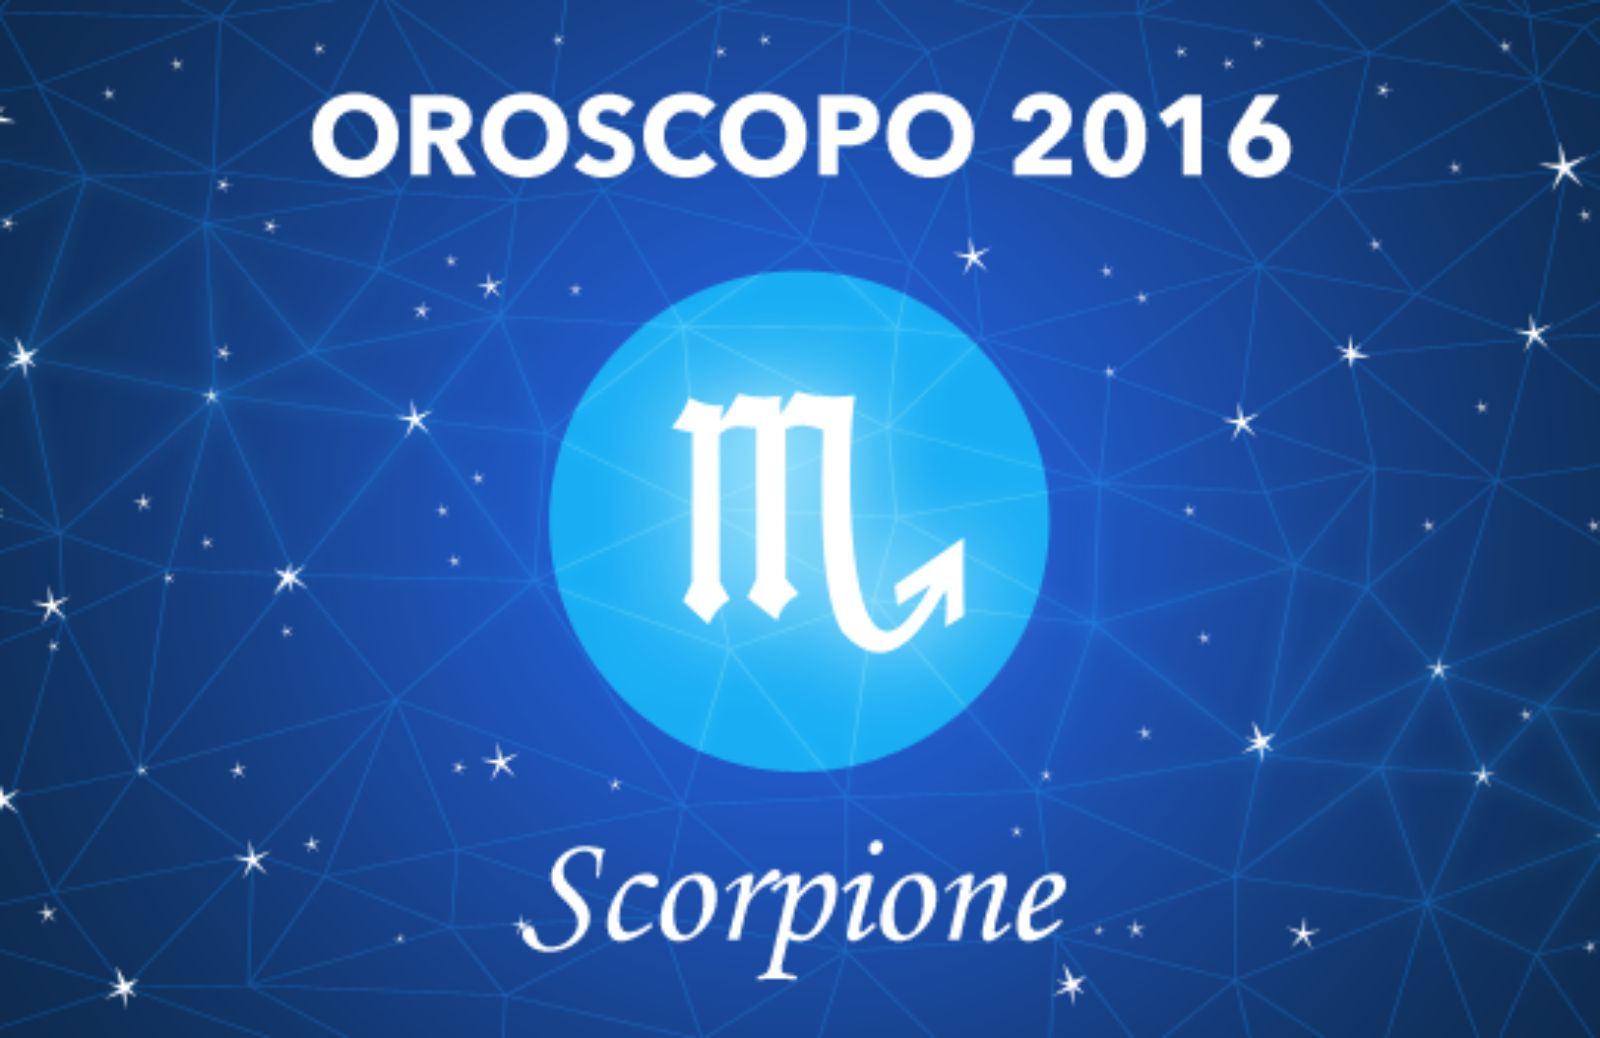 Oroscopo 2016 - Scorpione